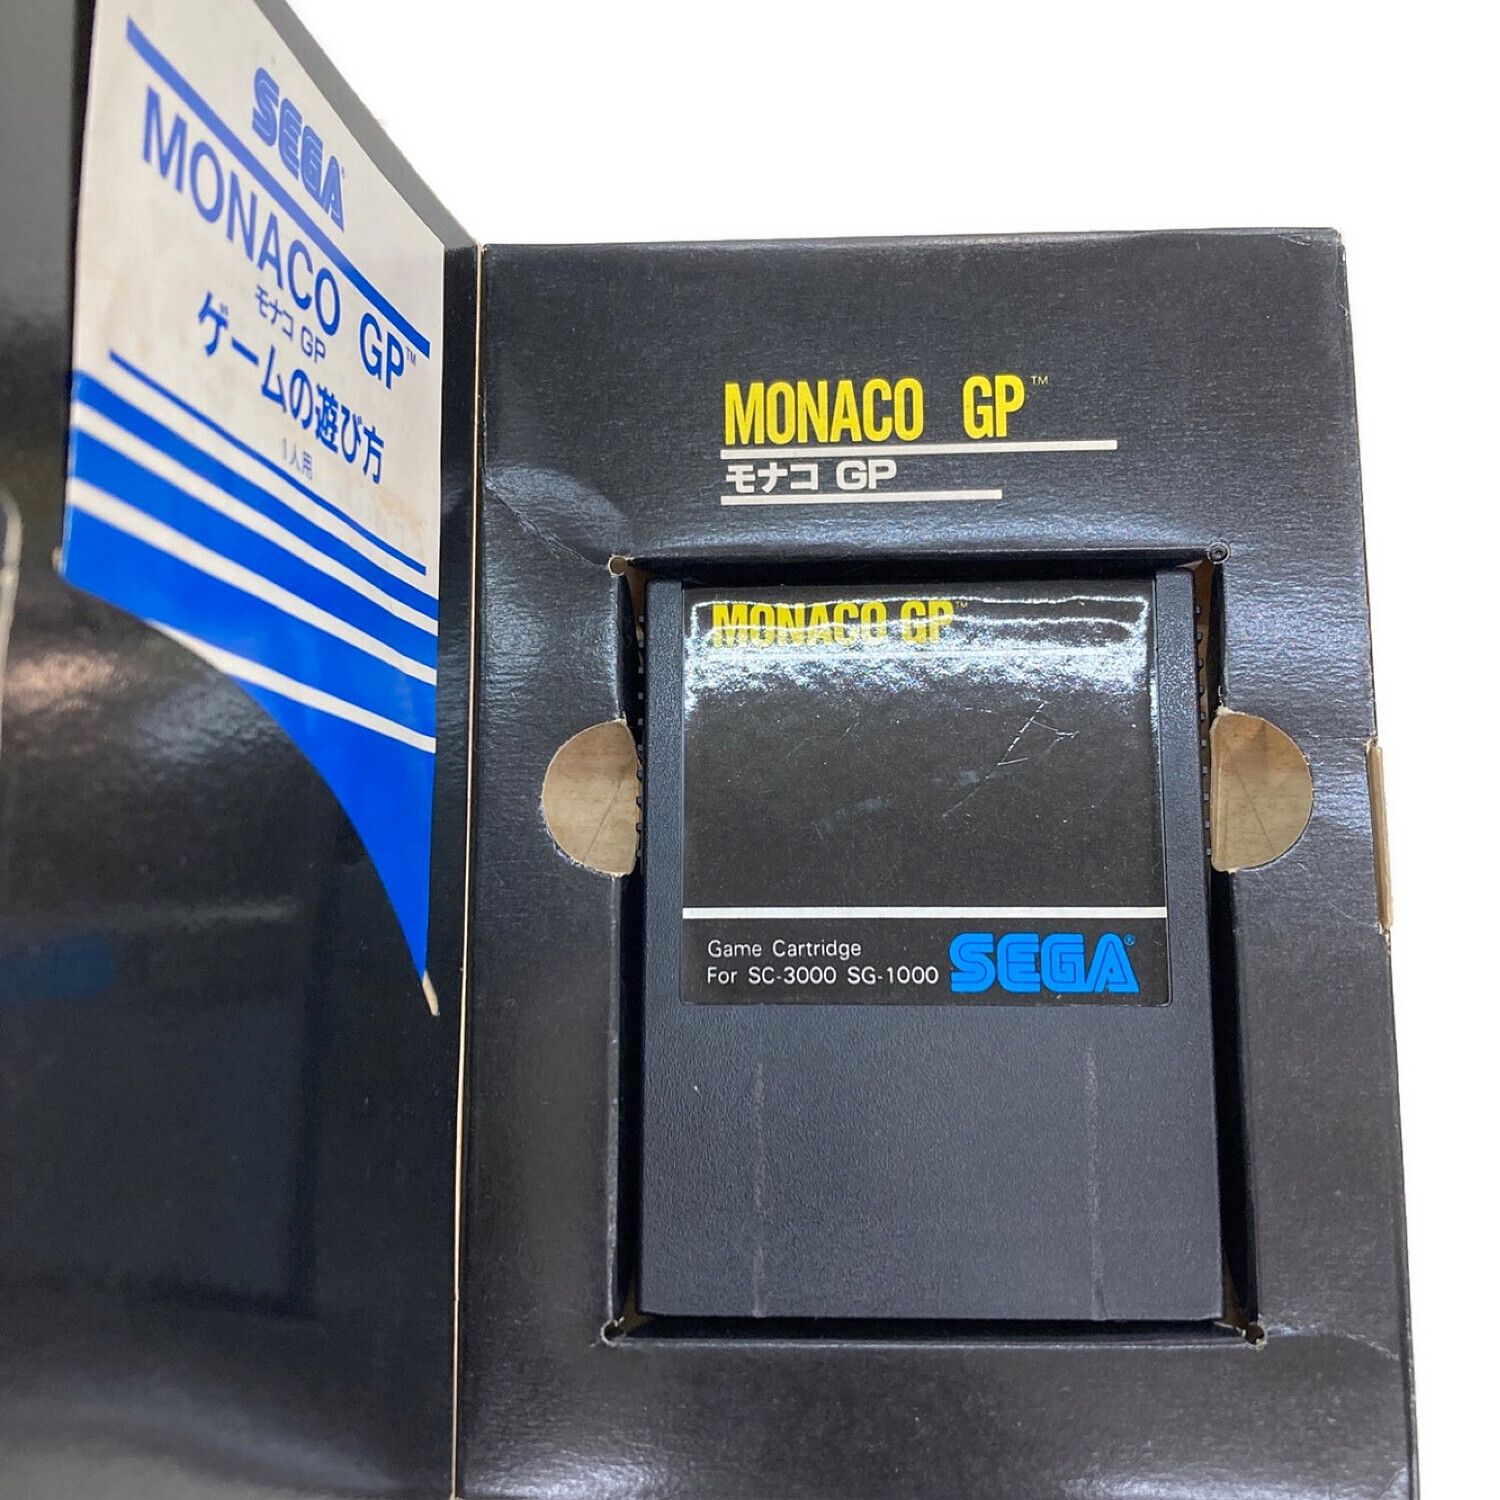 MONACO GP SG-1000・SG-3000用ソフト 箱・取説付 箱イタミ ※動作未確認 